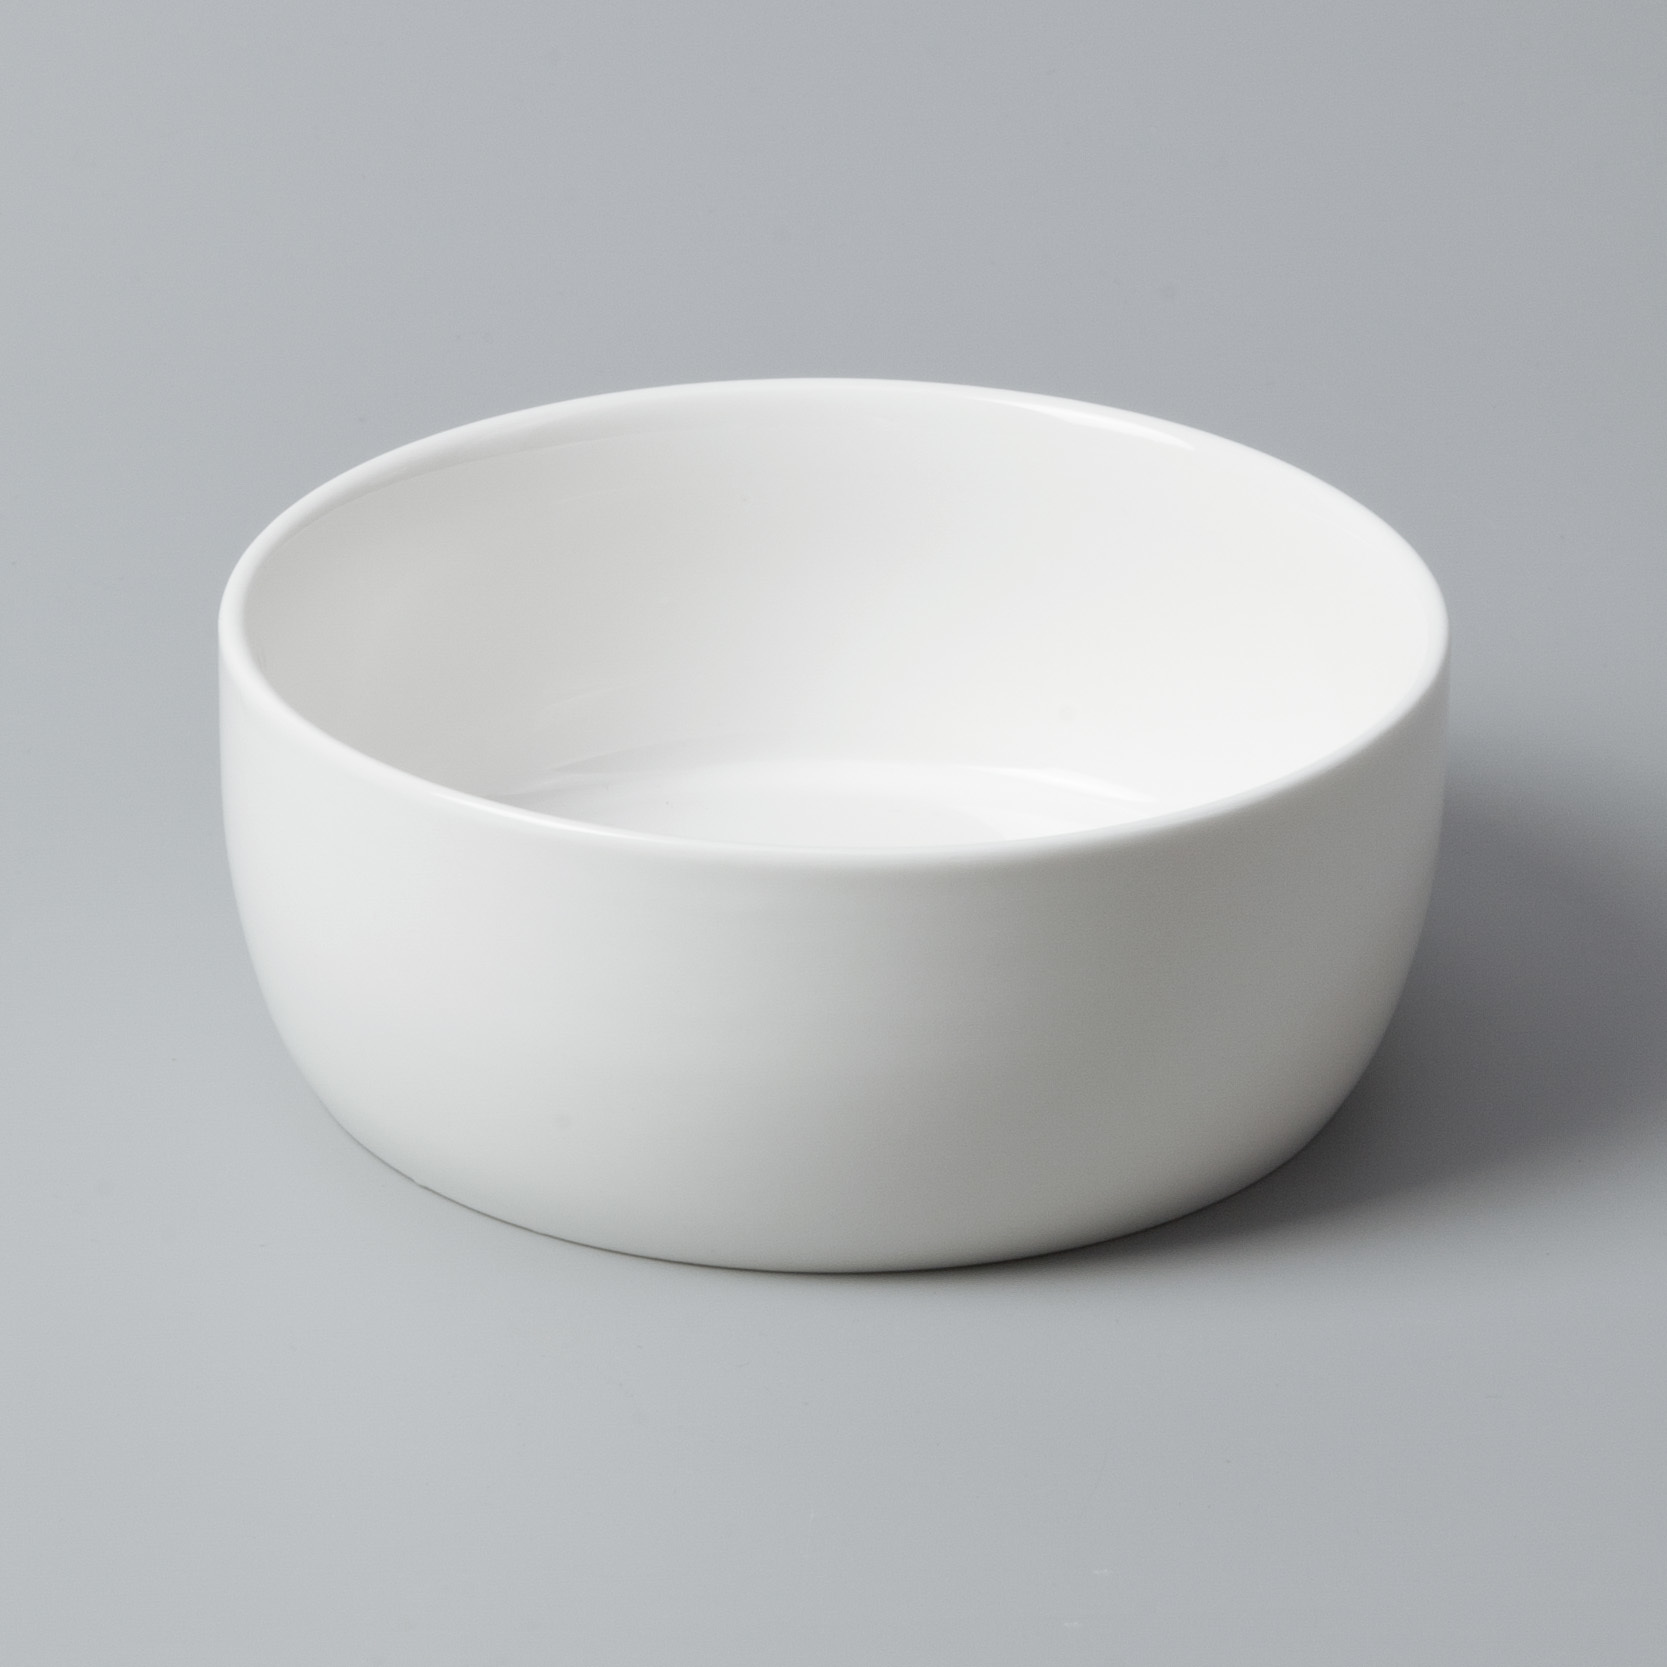 white porcelain tableware elegant porcelain white dinner sets Two Eight Warranty